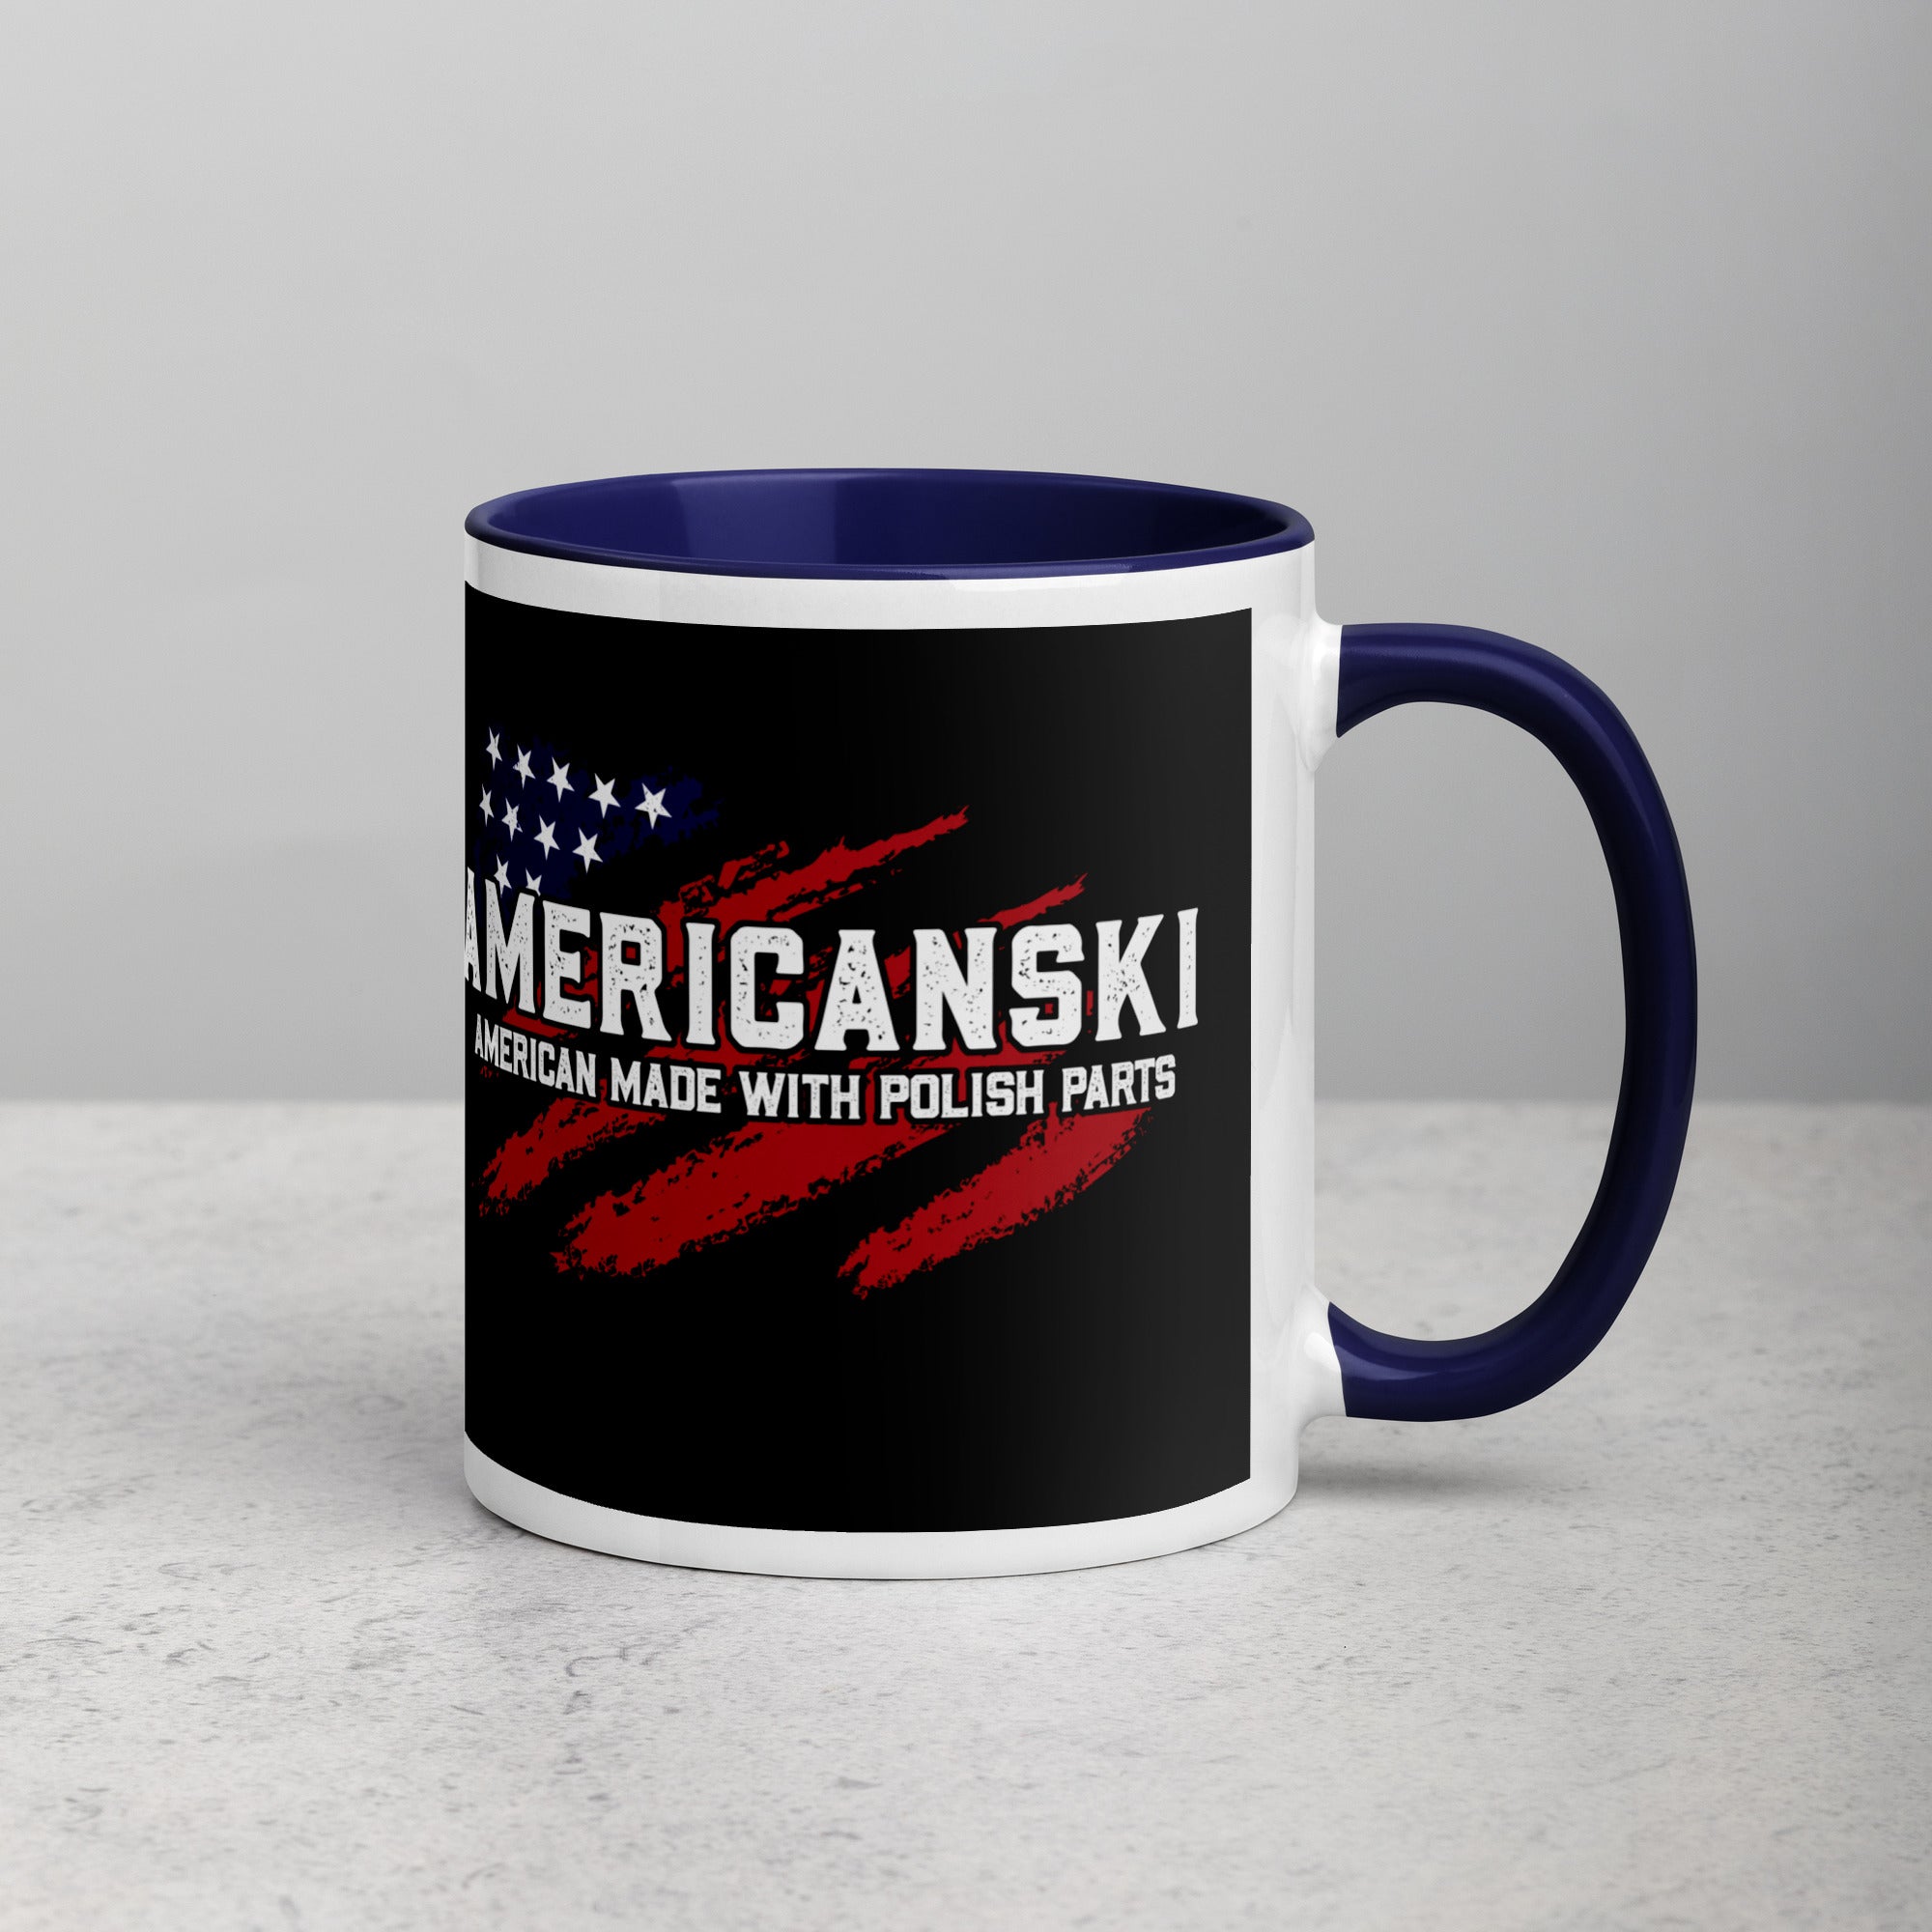 Americanski Coffee Mug with Color Inside  Polish Shirt Store   